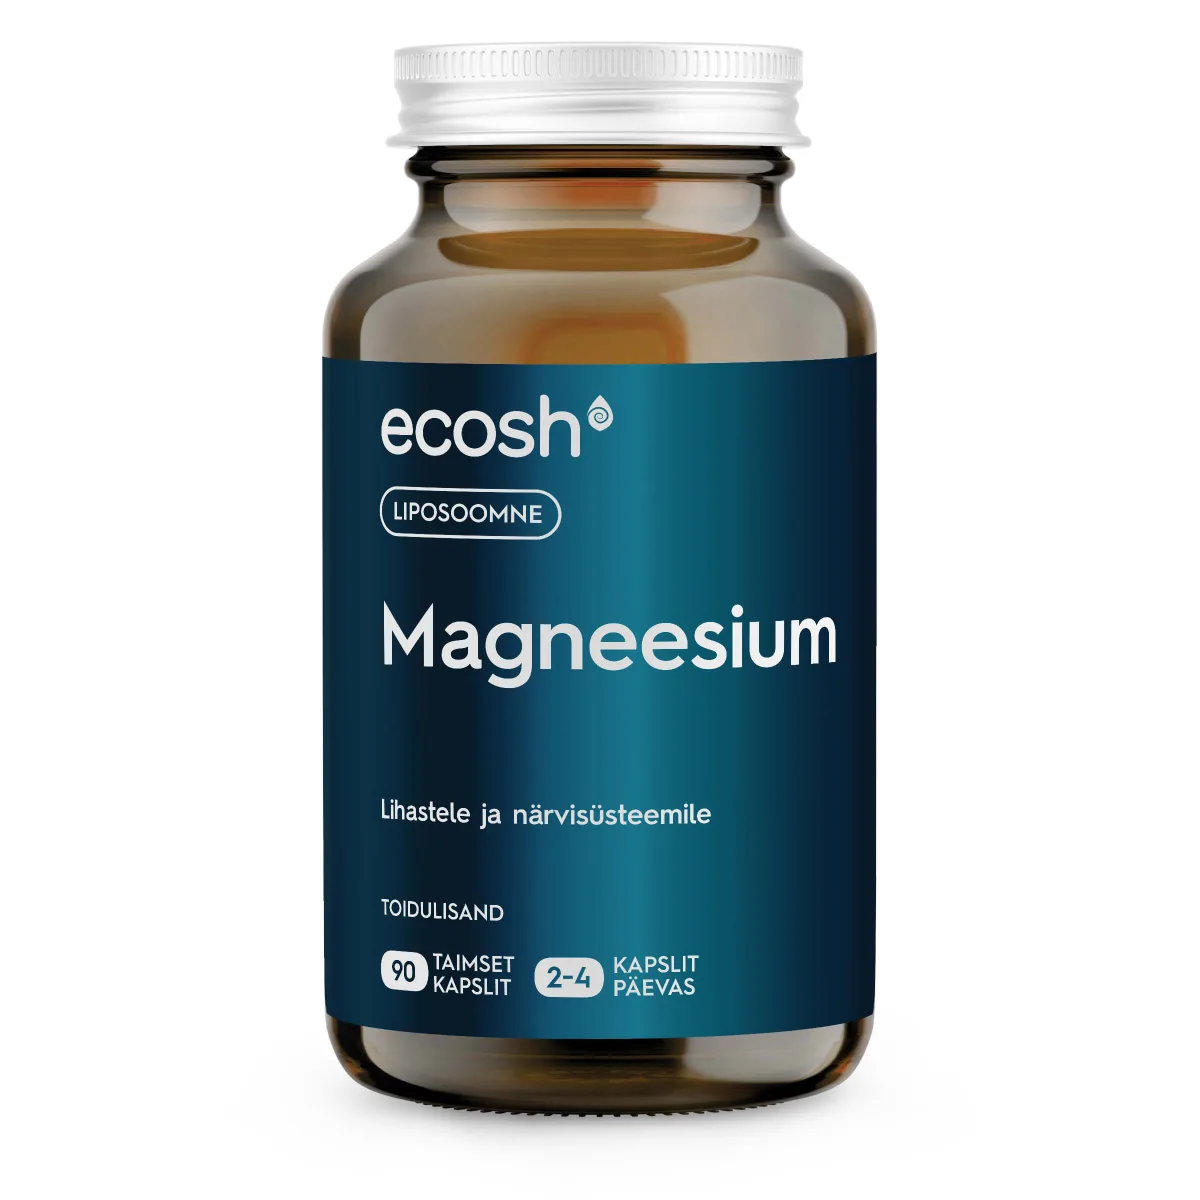 Liposoomne Magneesium